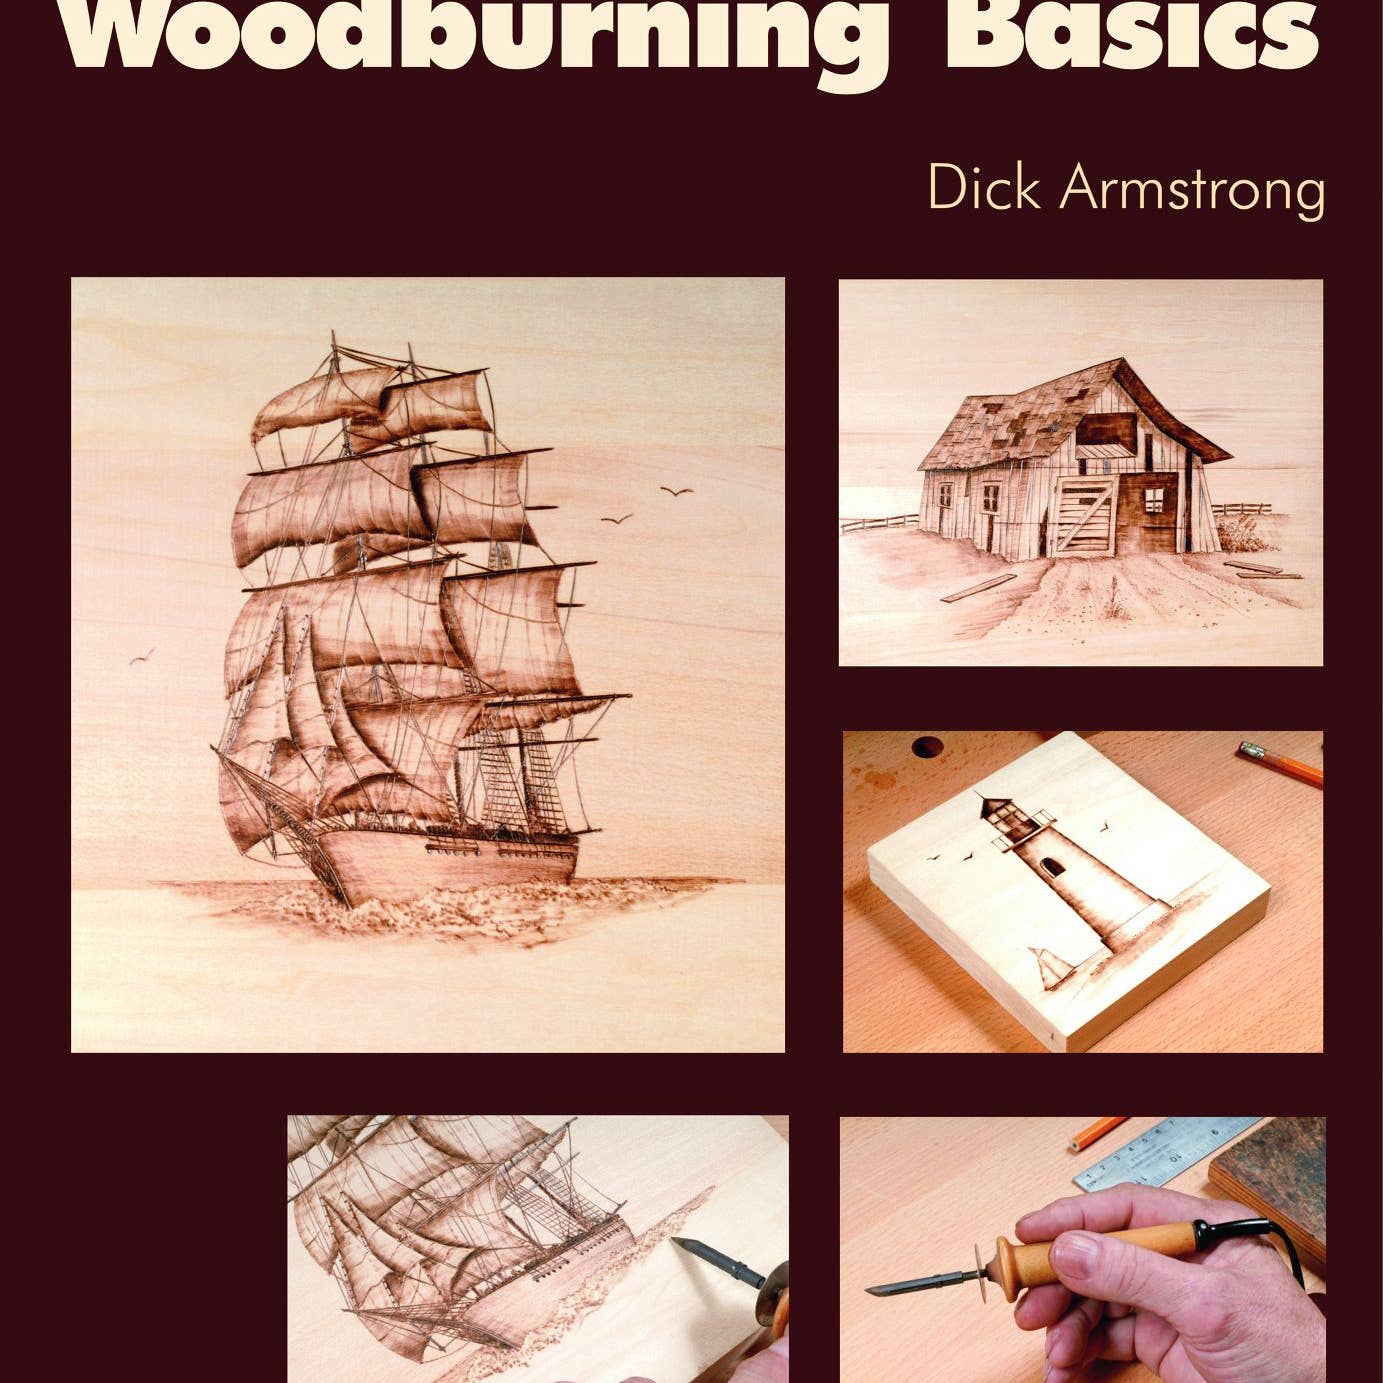 Woodburning Basics